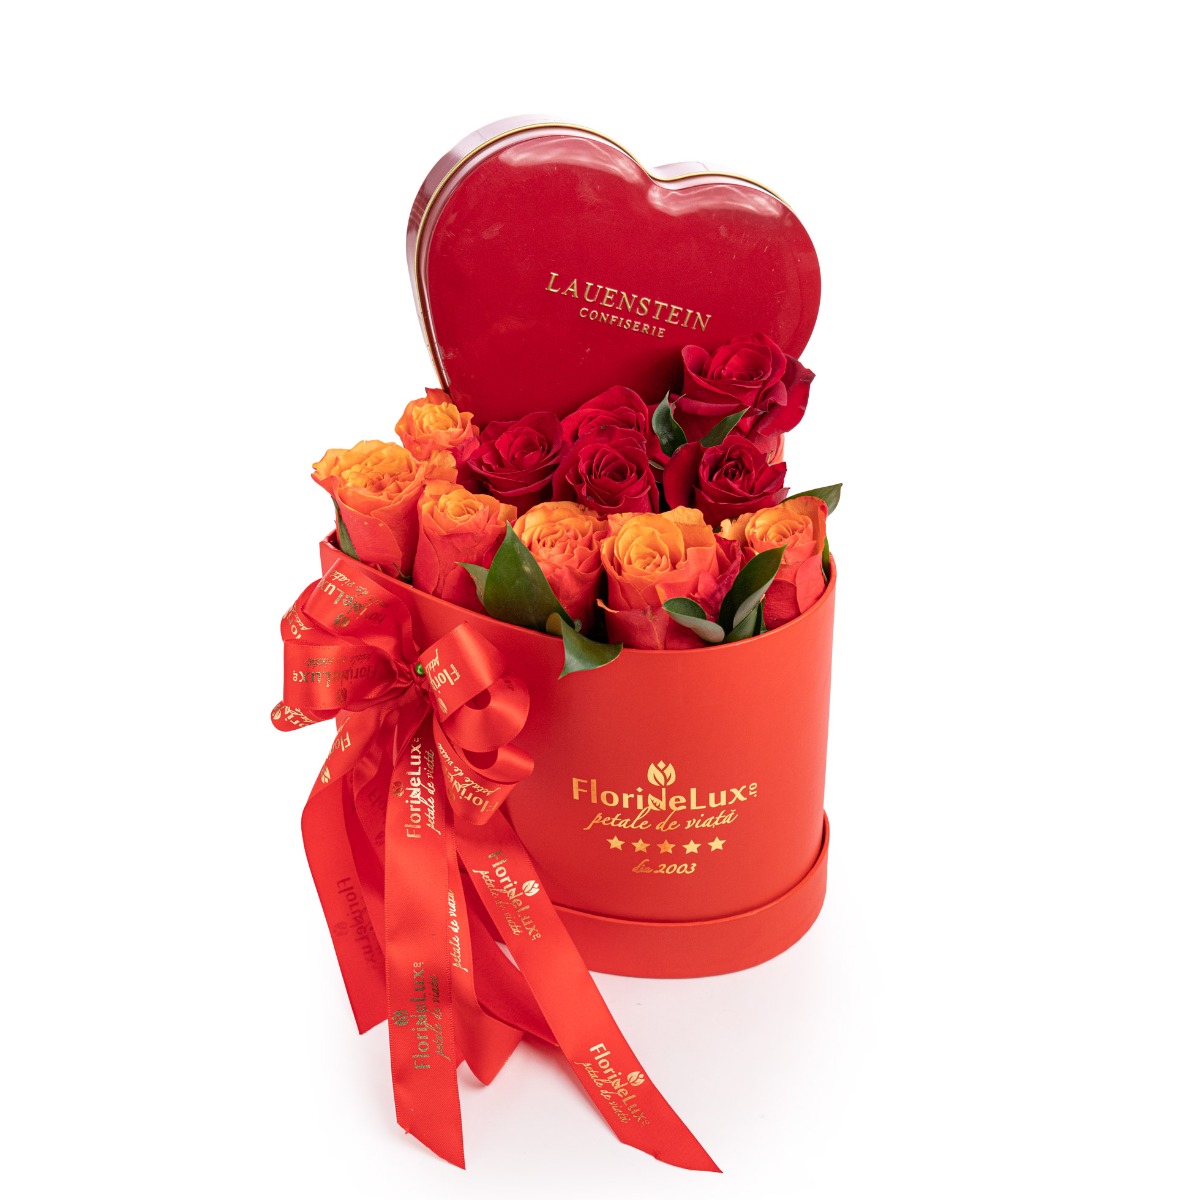 Cutie inima cu trandafiri si ciocolata premium-Premium